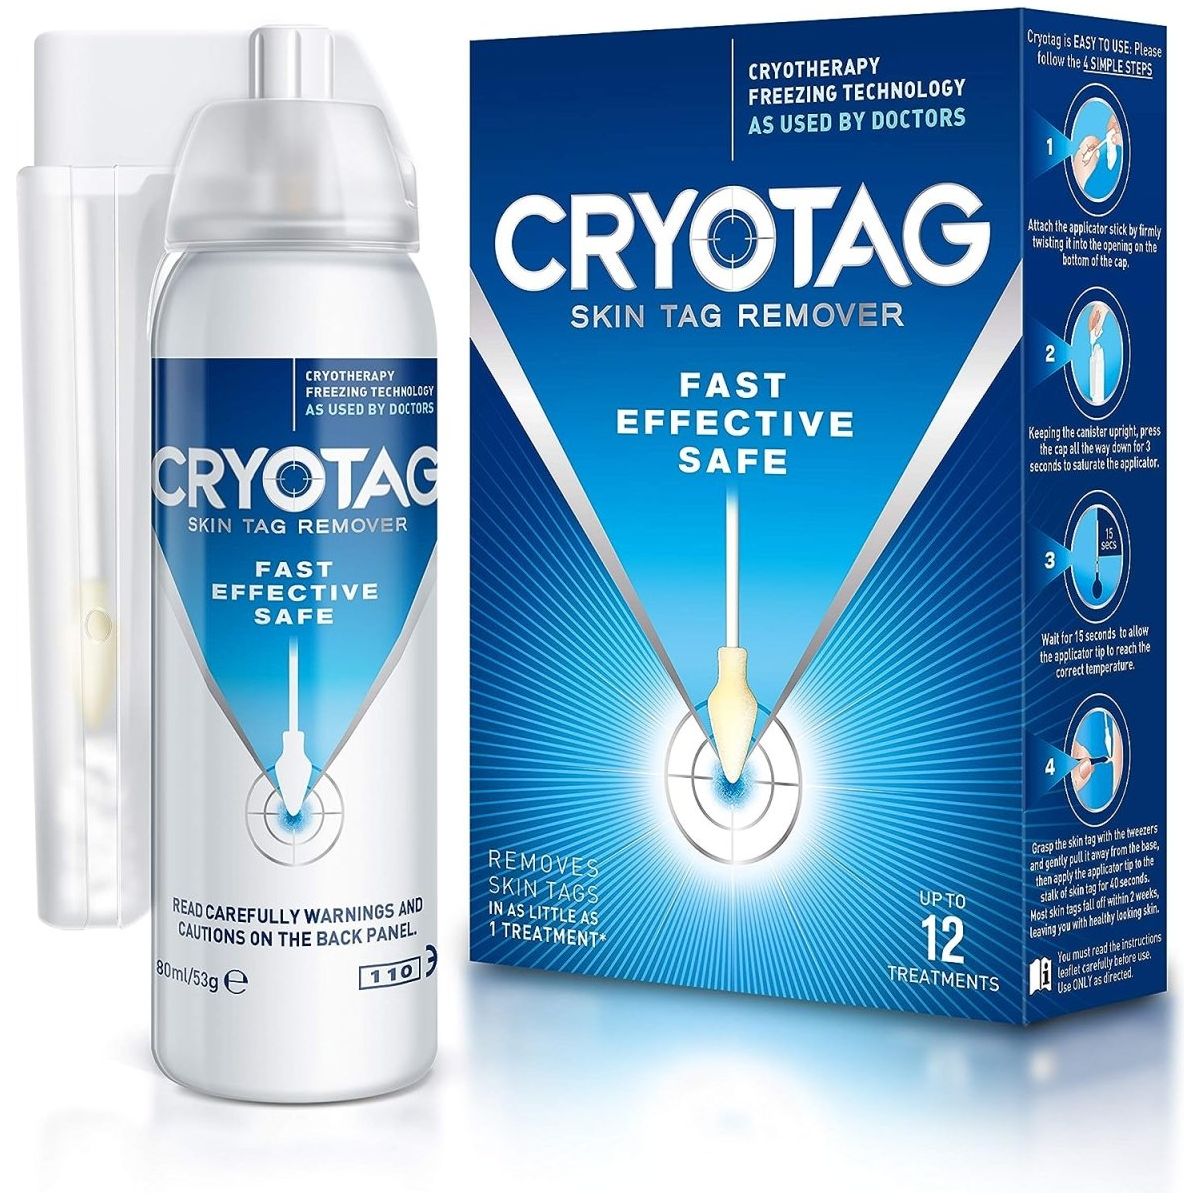 Cryotag Skin Tag Remover Fast Effective Safe - DG International Ventures Limited